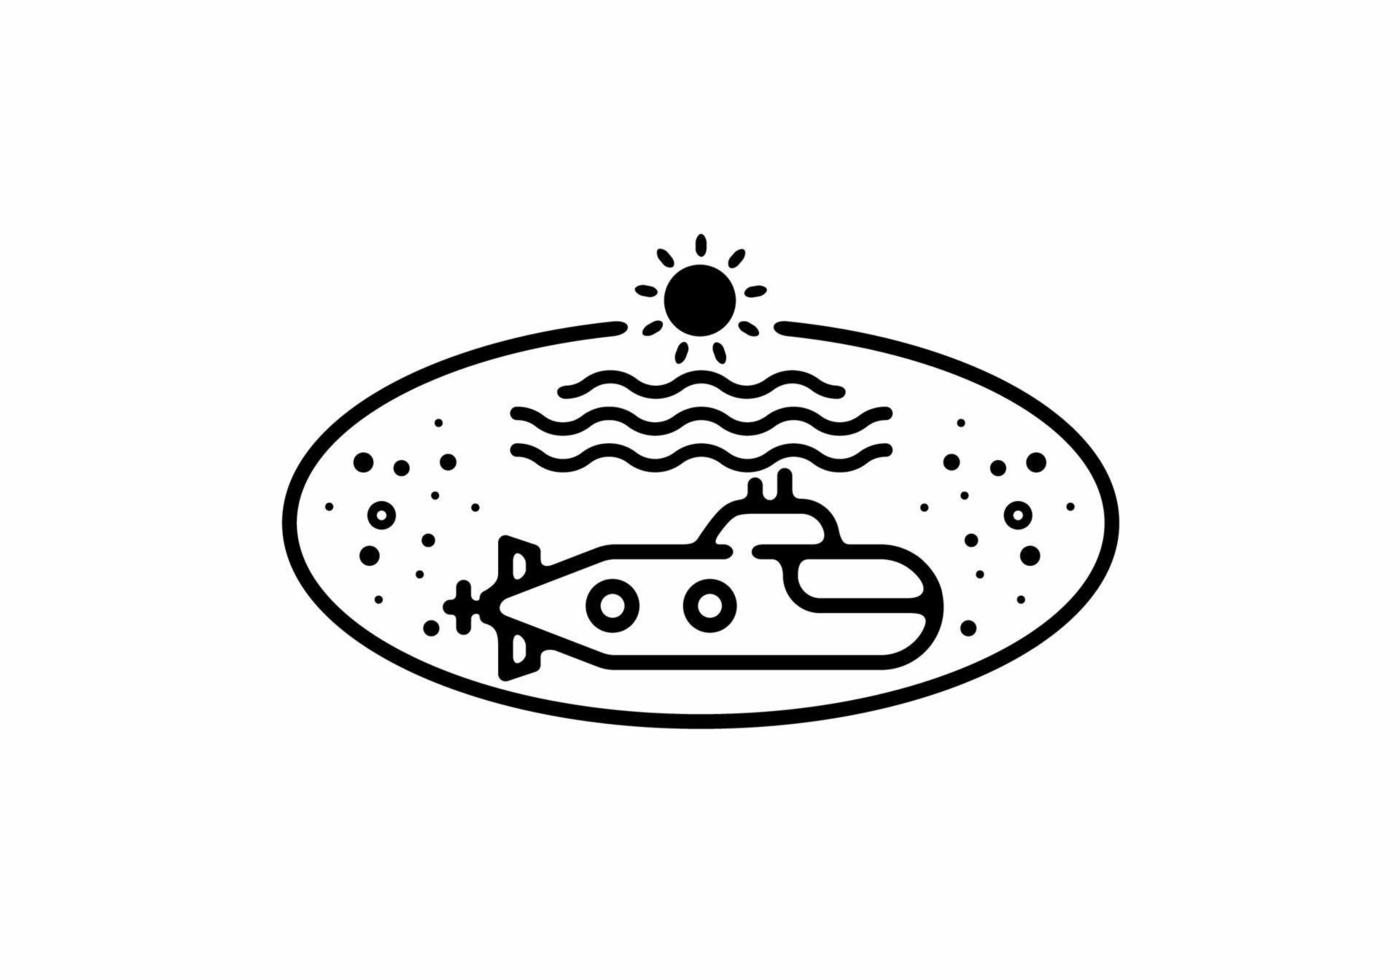 schwarze Linie Kunstillustration des U-Bootes in ovaler Form vektor